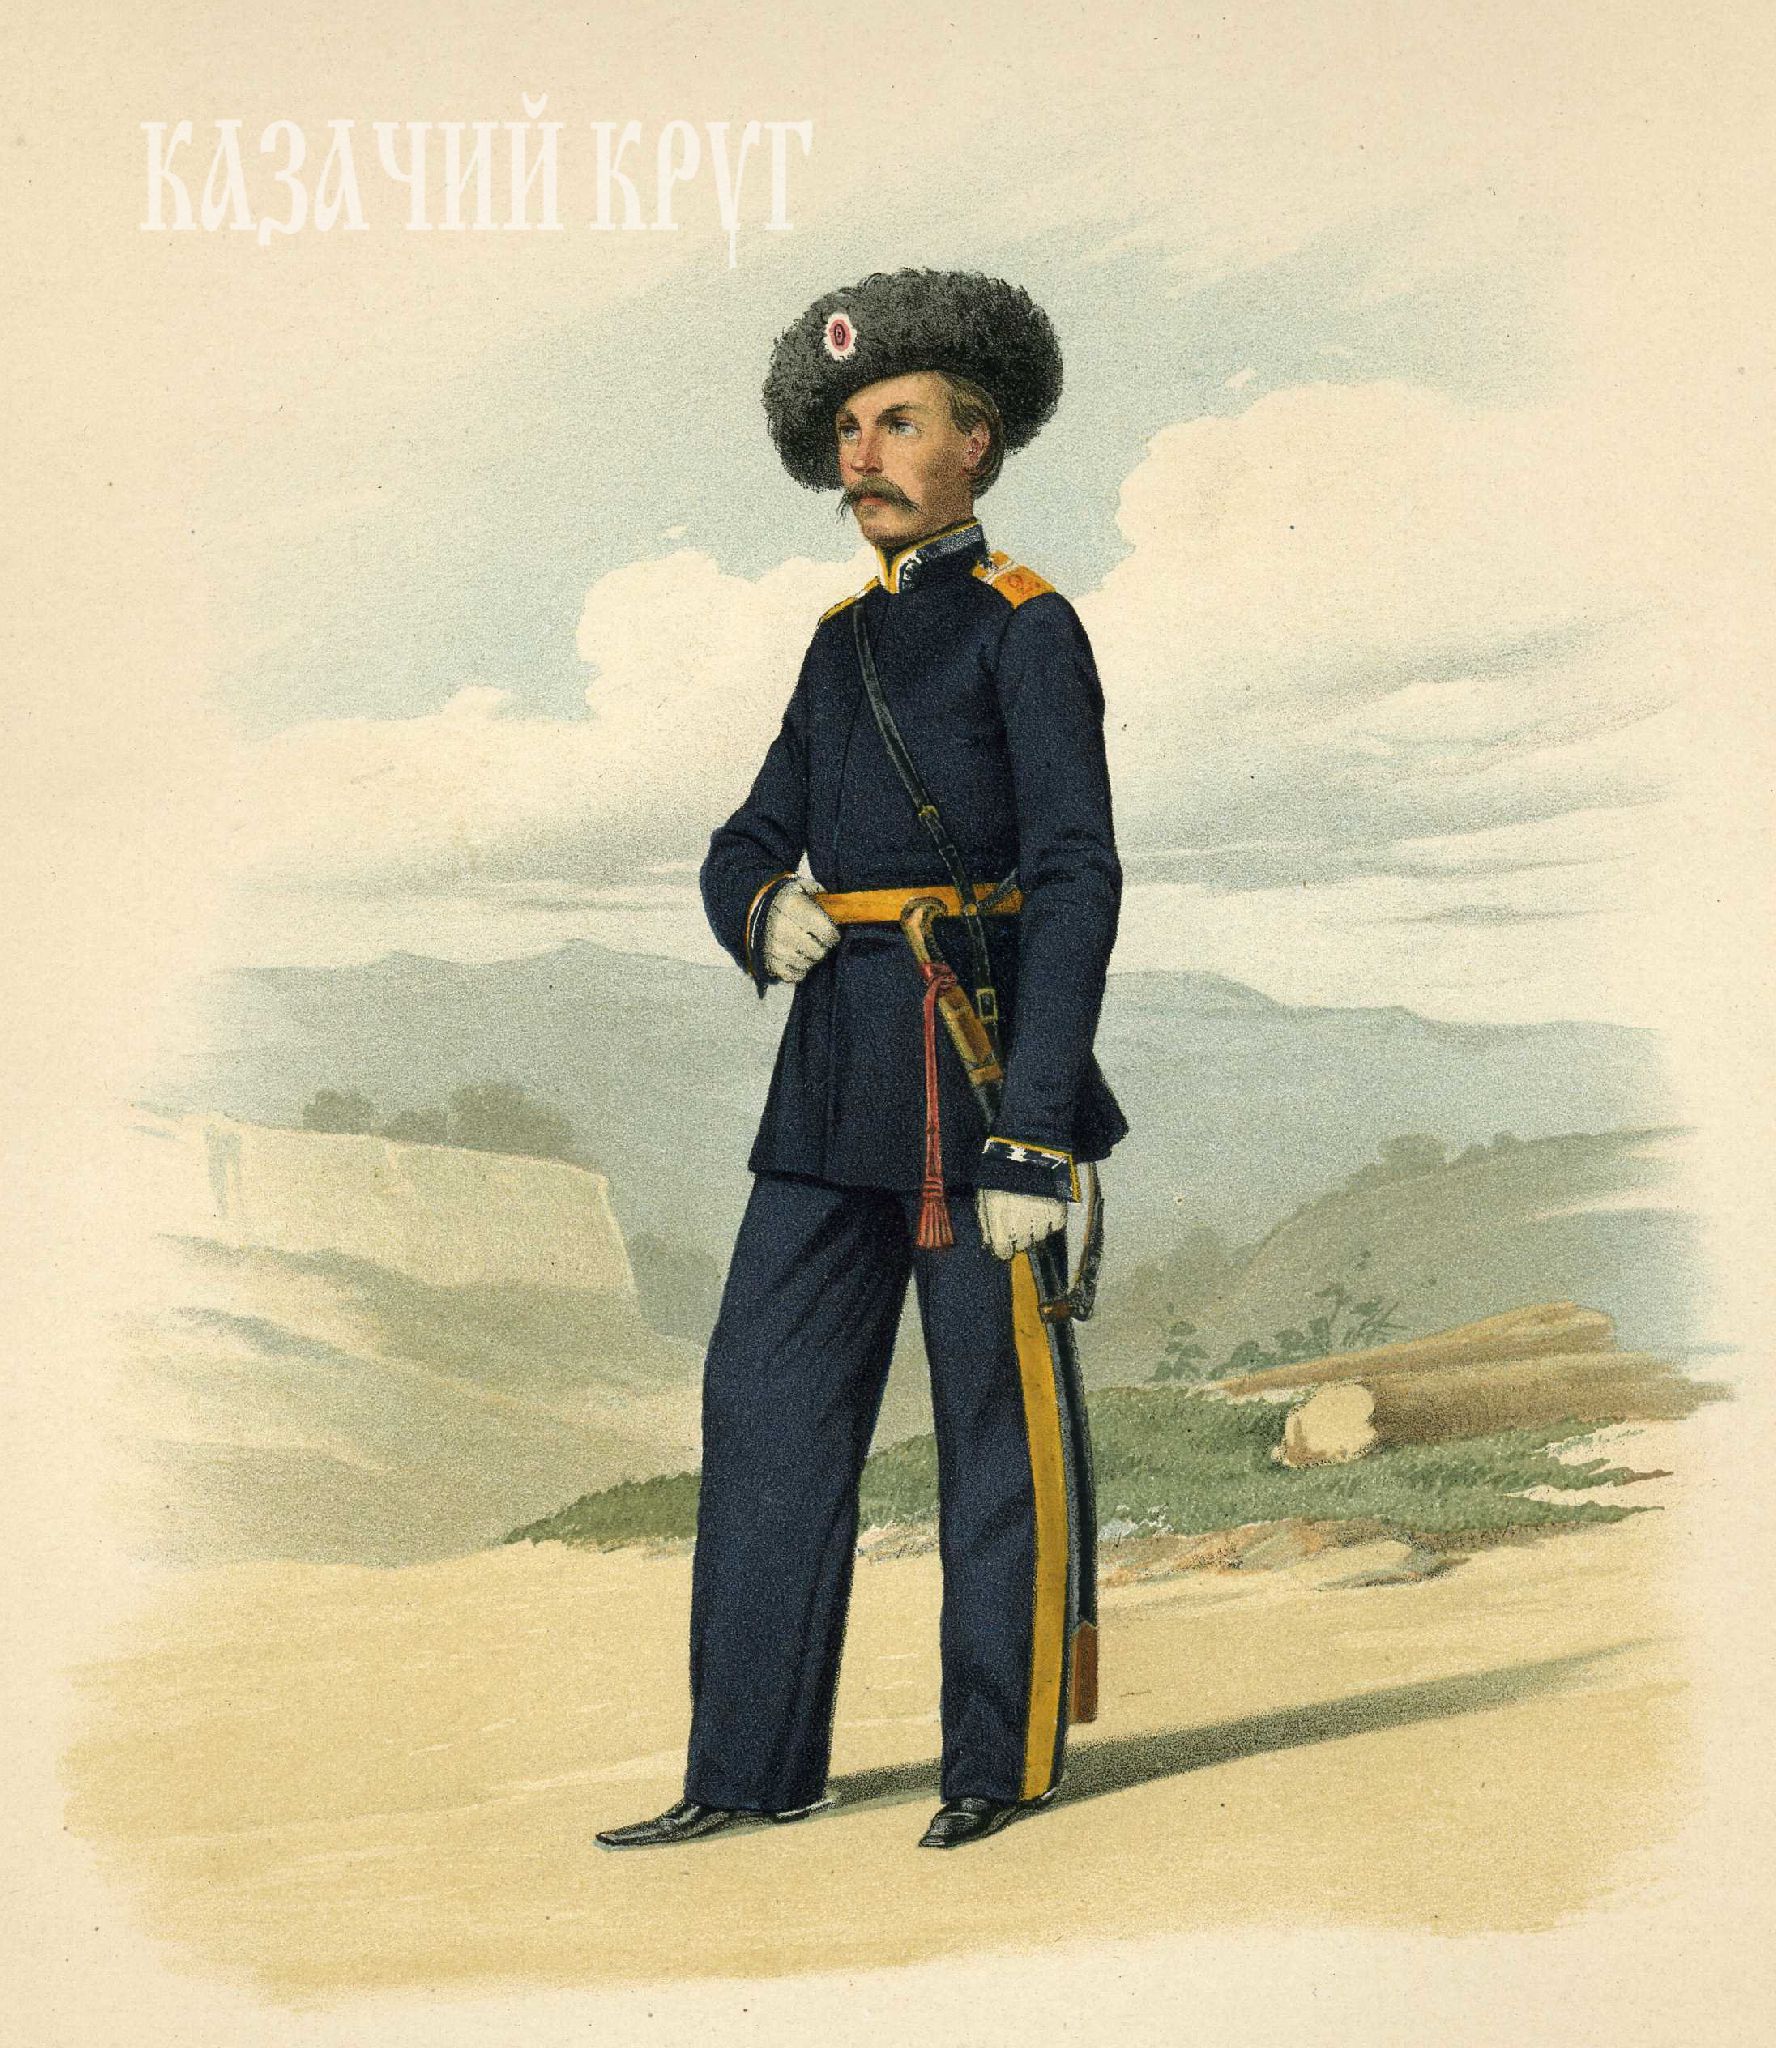 Урядник Астраханского казачьего войска. 18 марта 1855 г.